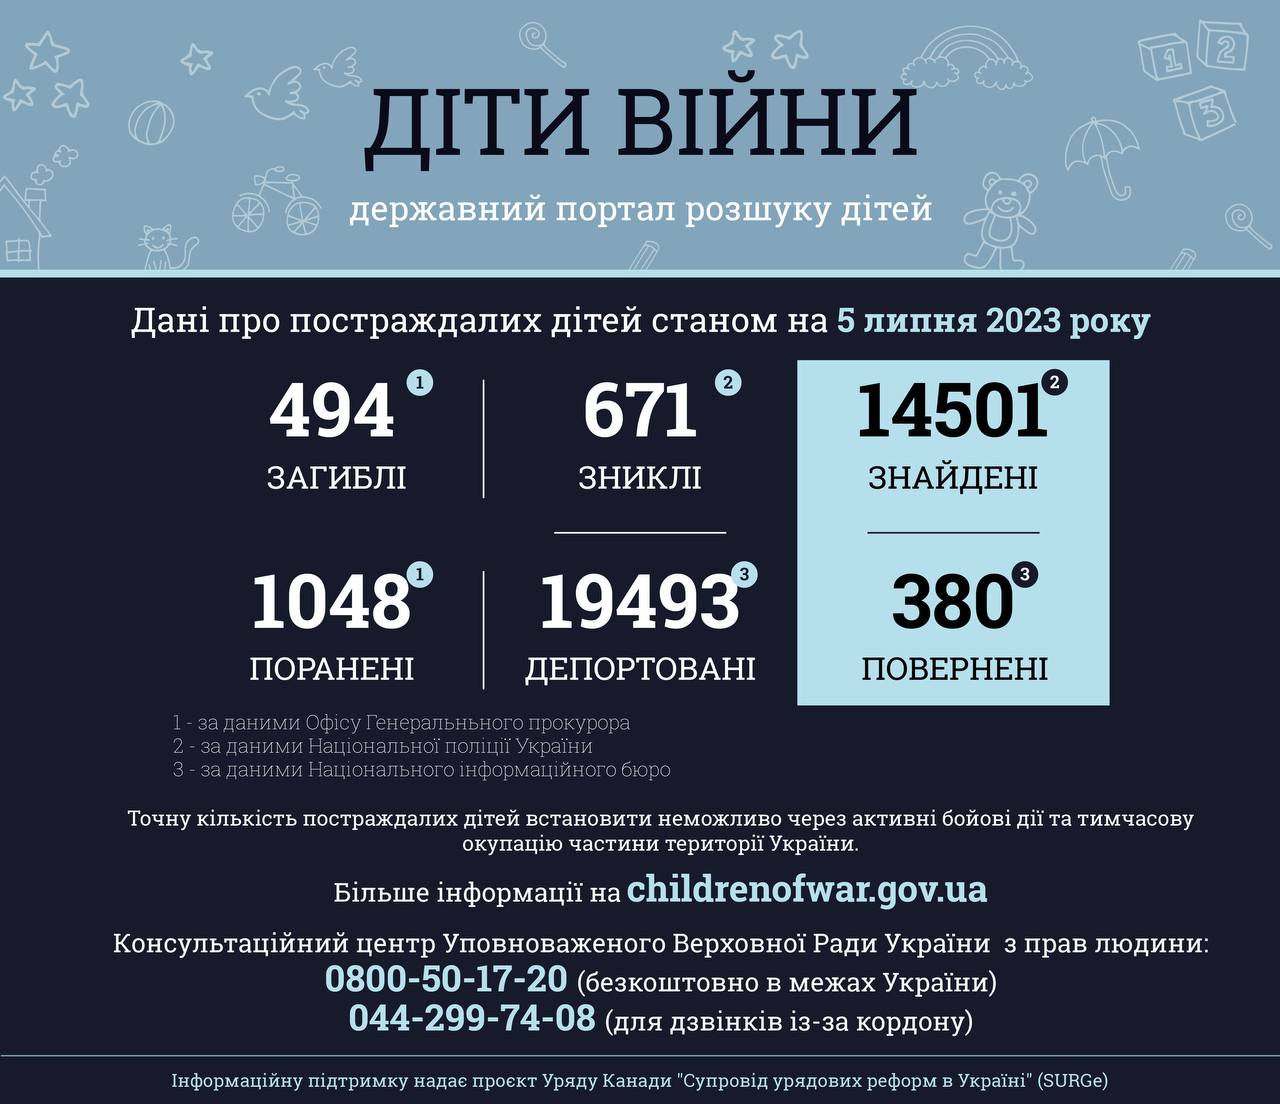 Інфографіка оприлюднена Офісом Генерального прокурора в офіційному телеграм-каналі.